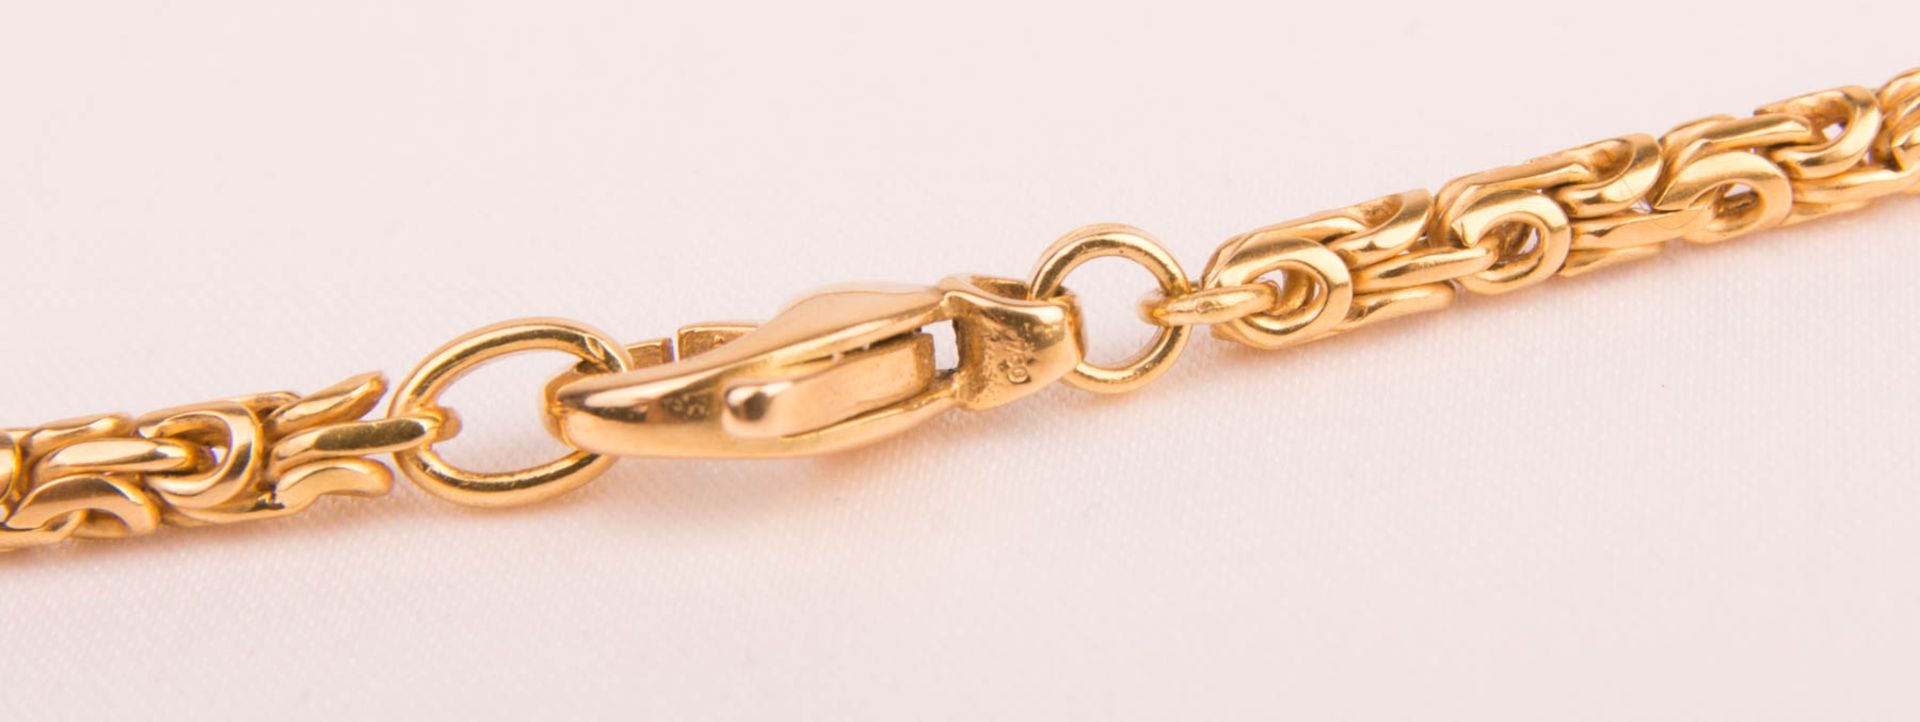 Halskette mit großem Peridot-Anhänger, 750er Gelbgold. - Bild 4 aus 5